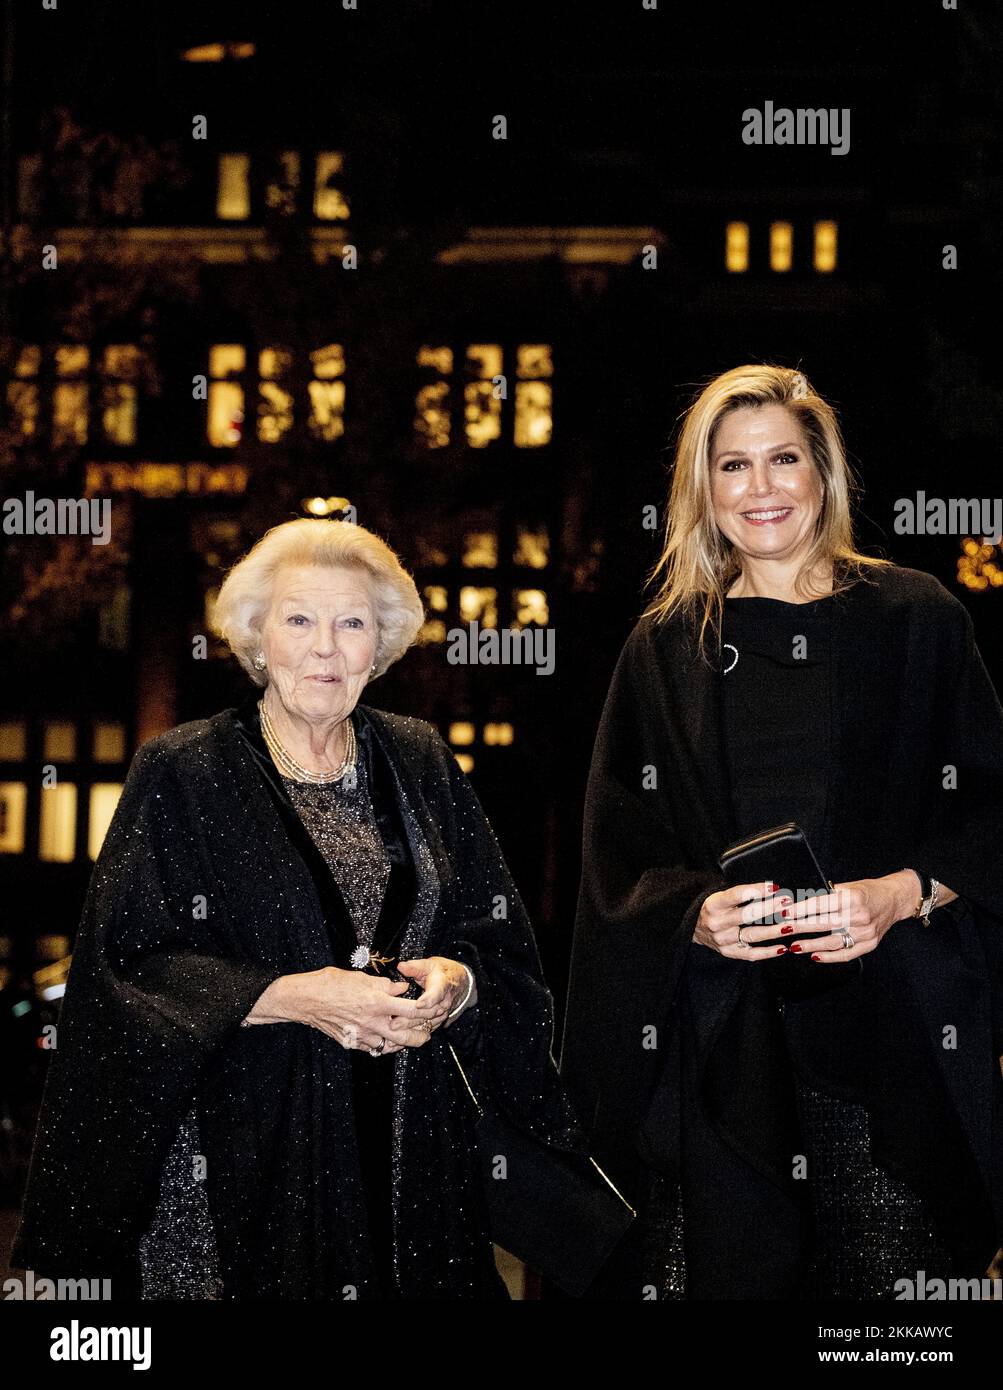 AMSTERDAM - Königin Maxima und Prinzessin Beatrix kommen am Concertgebouw an. Sie besuchen ein Konzert des Royal Concertgebouw Orchestra, das vom 26-jährigen zukünftigen Chefdirigent Klaus Makela geleitet wird. Königin Maxima ist die Gönnerin des Orchesters. ANP ROBIN UTRECHT niederlande raus - belgien raus Stockfoto